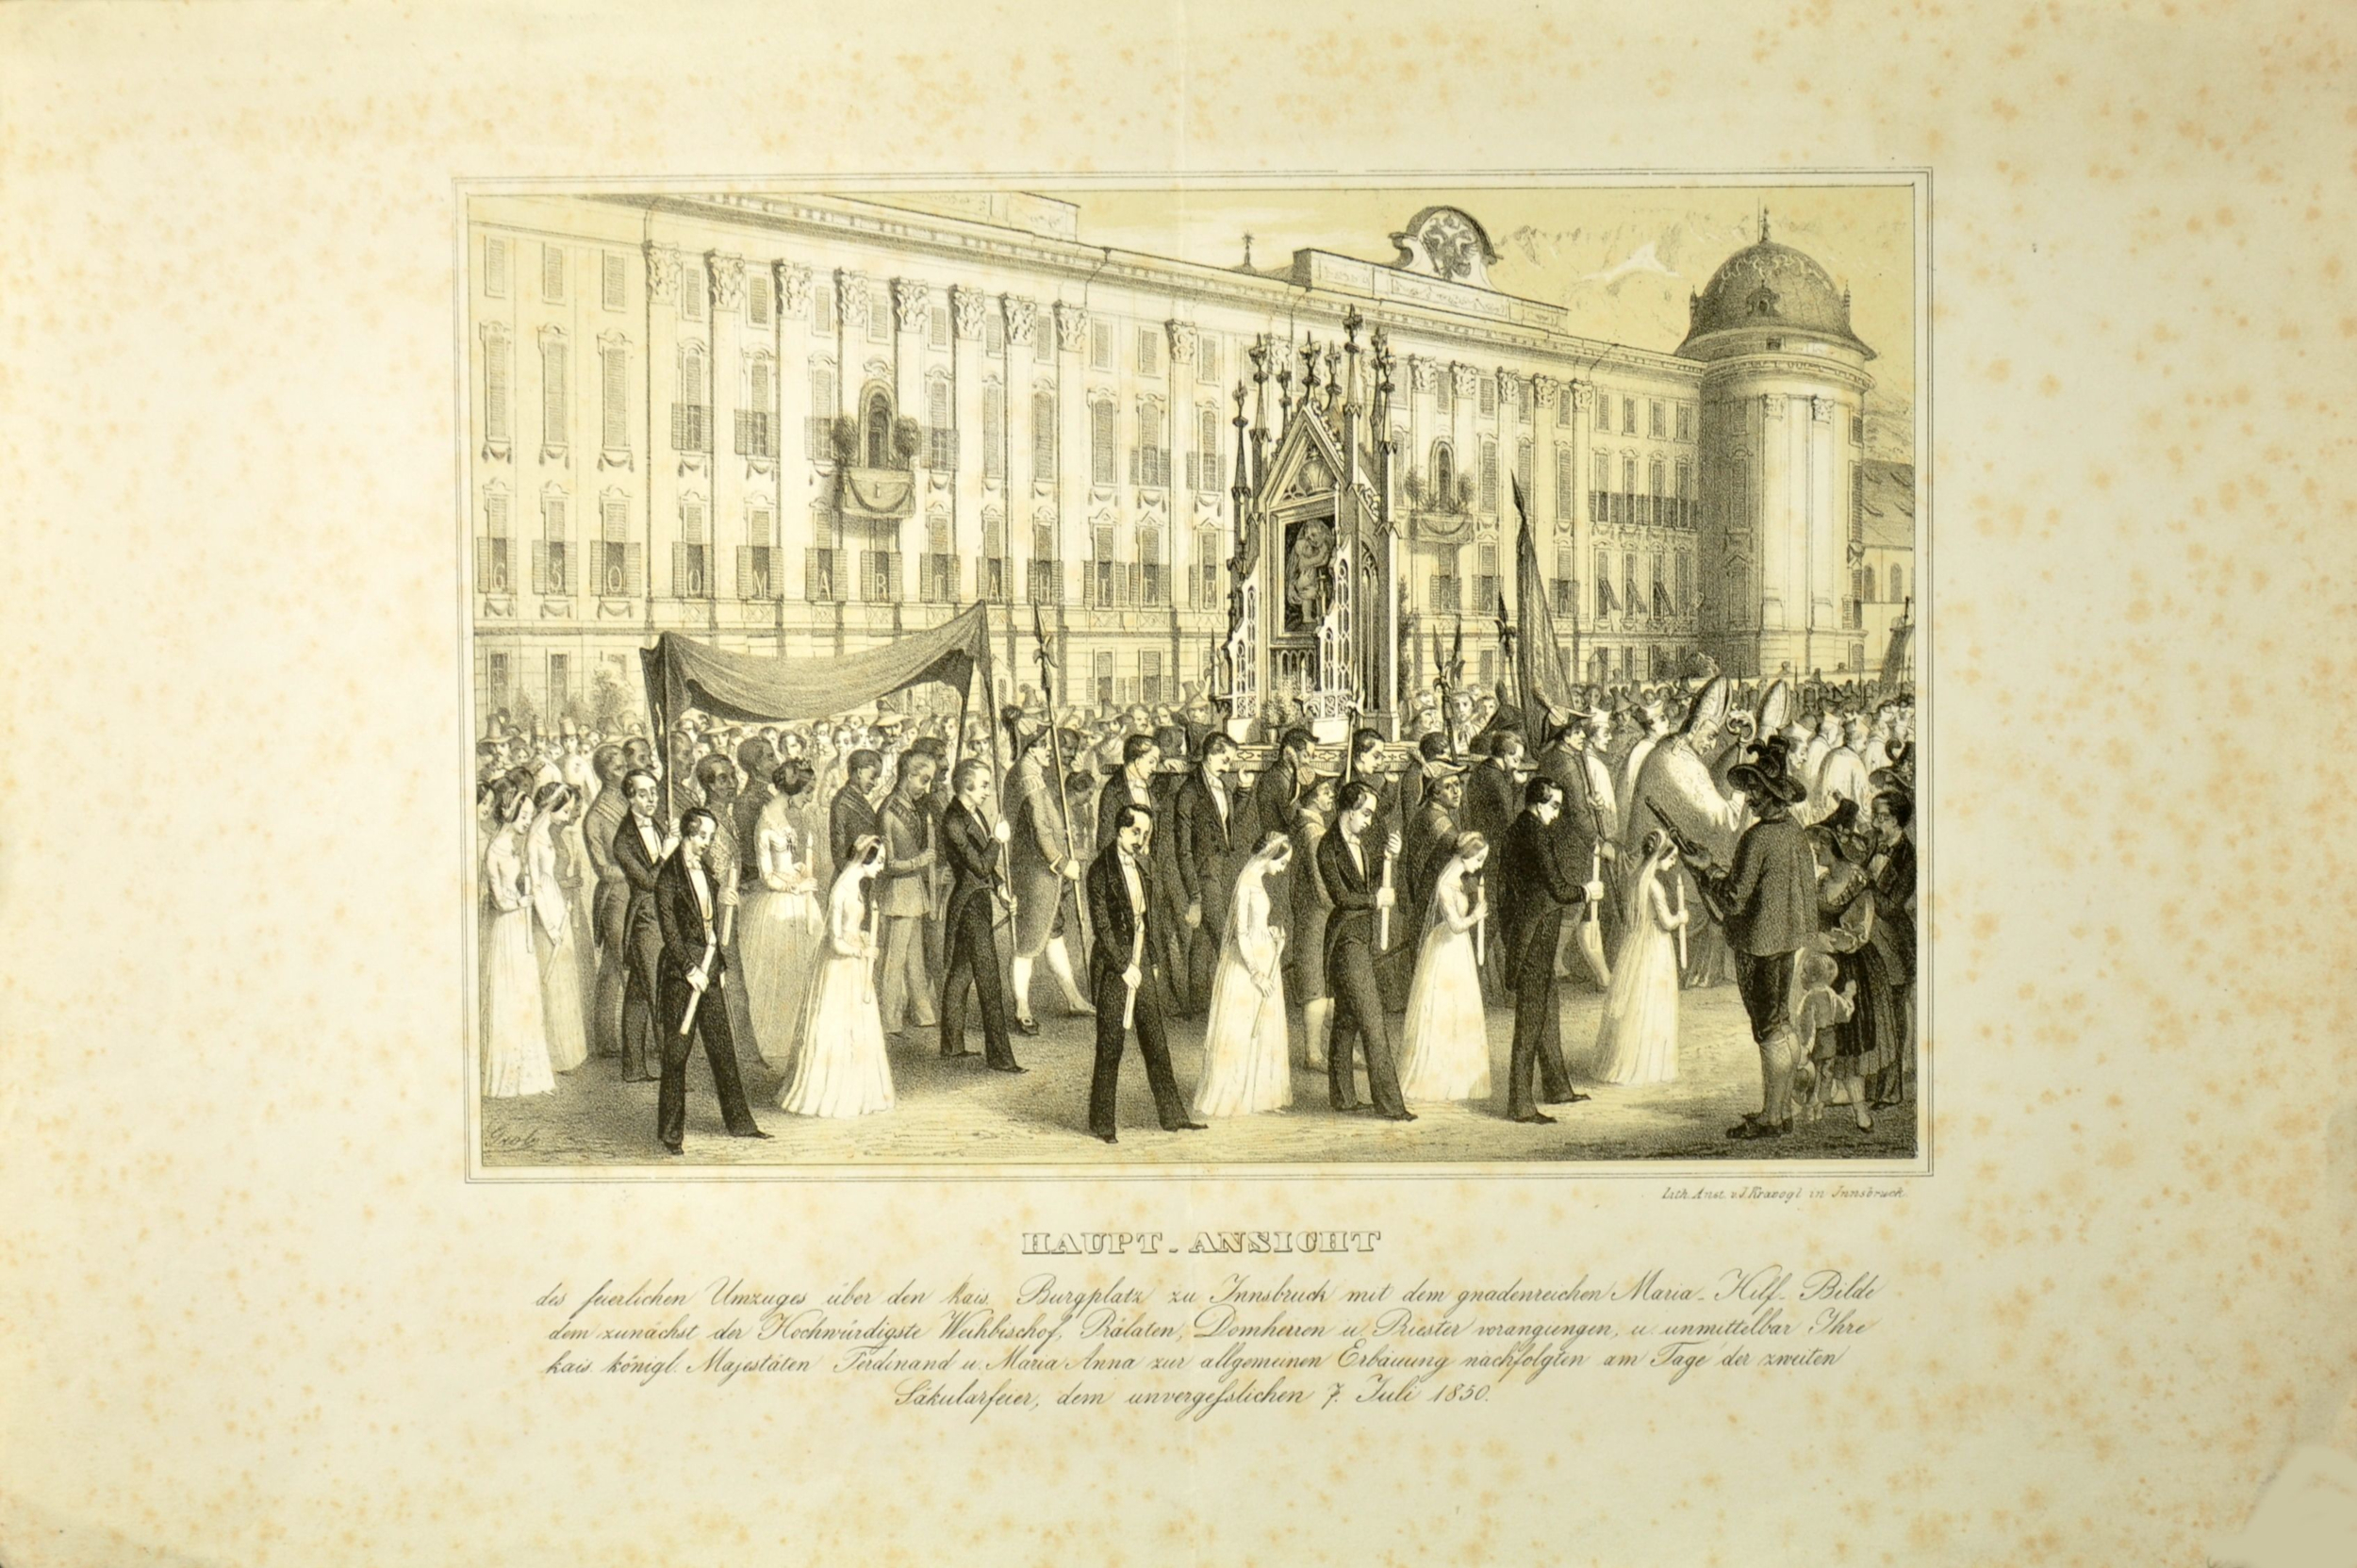 Ein Feierlicher Umzug Anno 1850